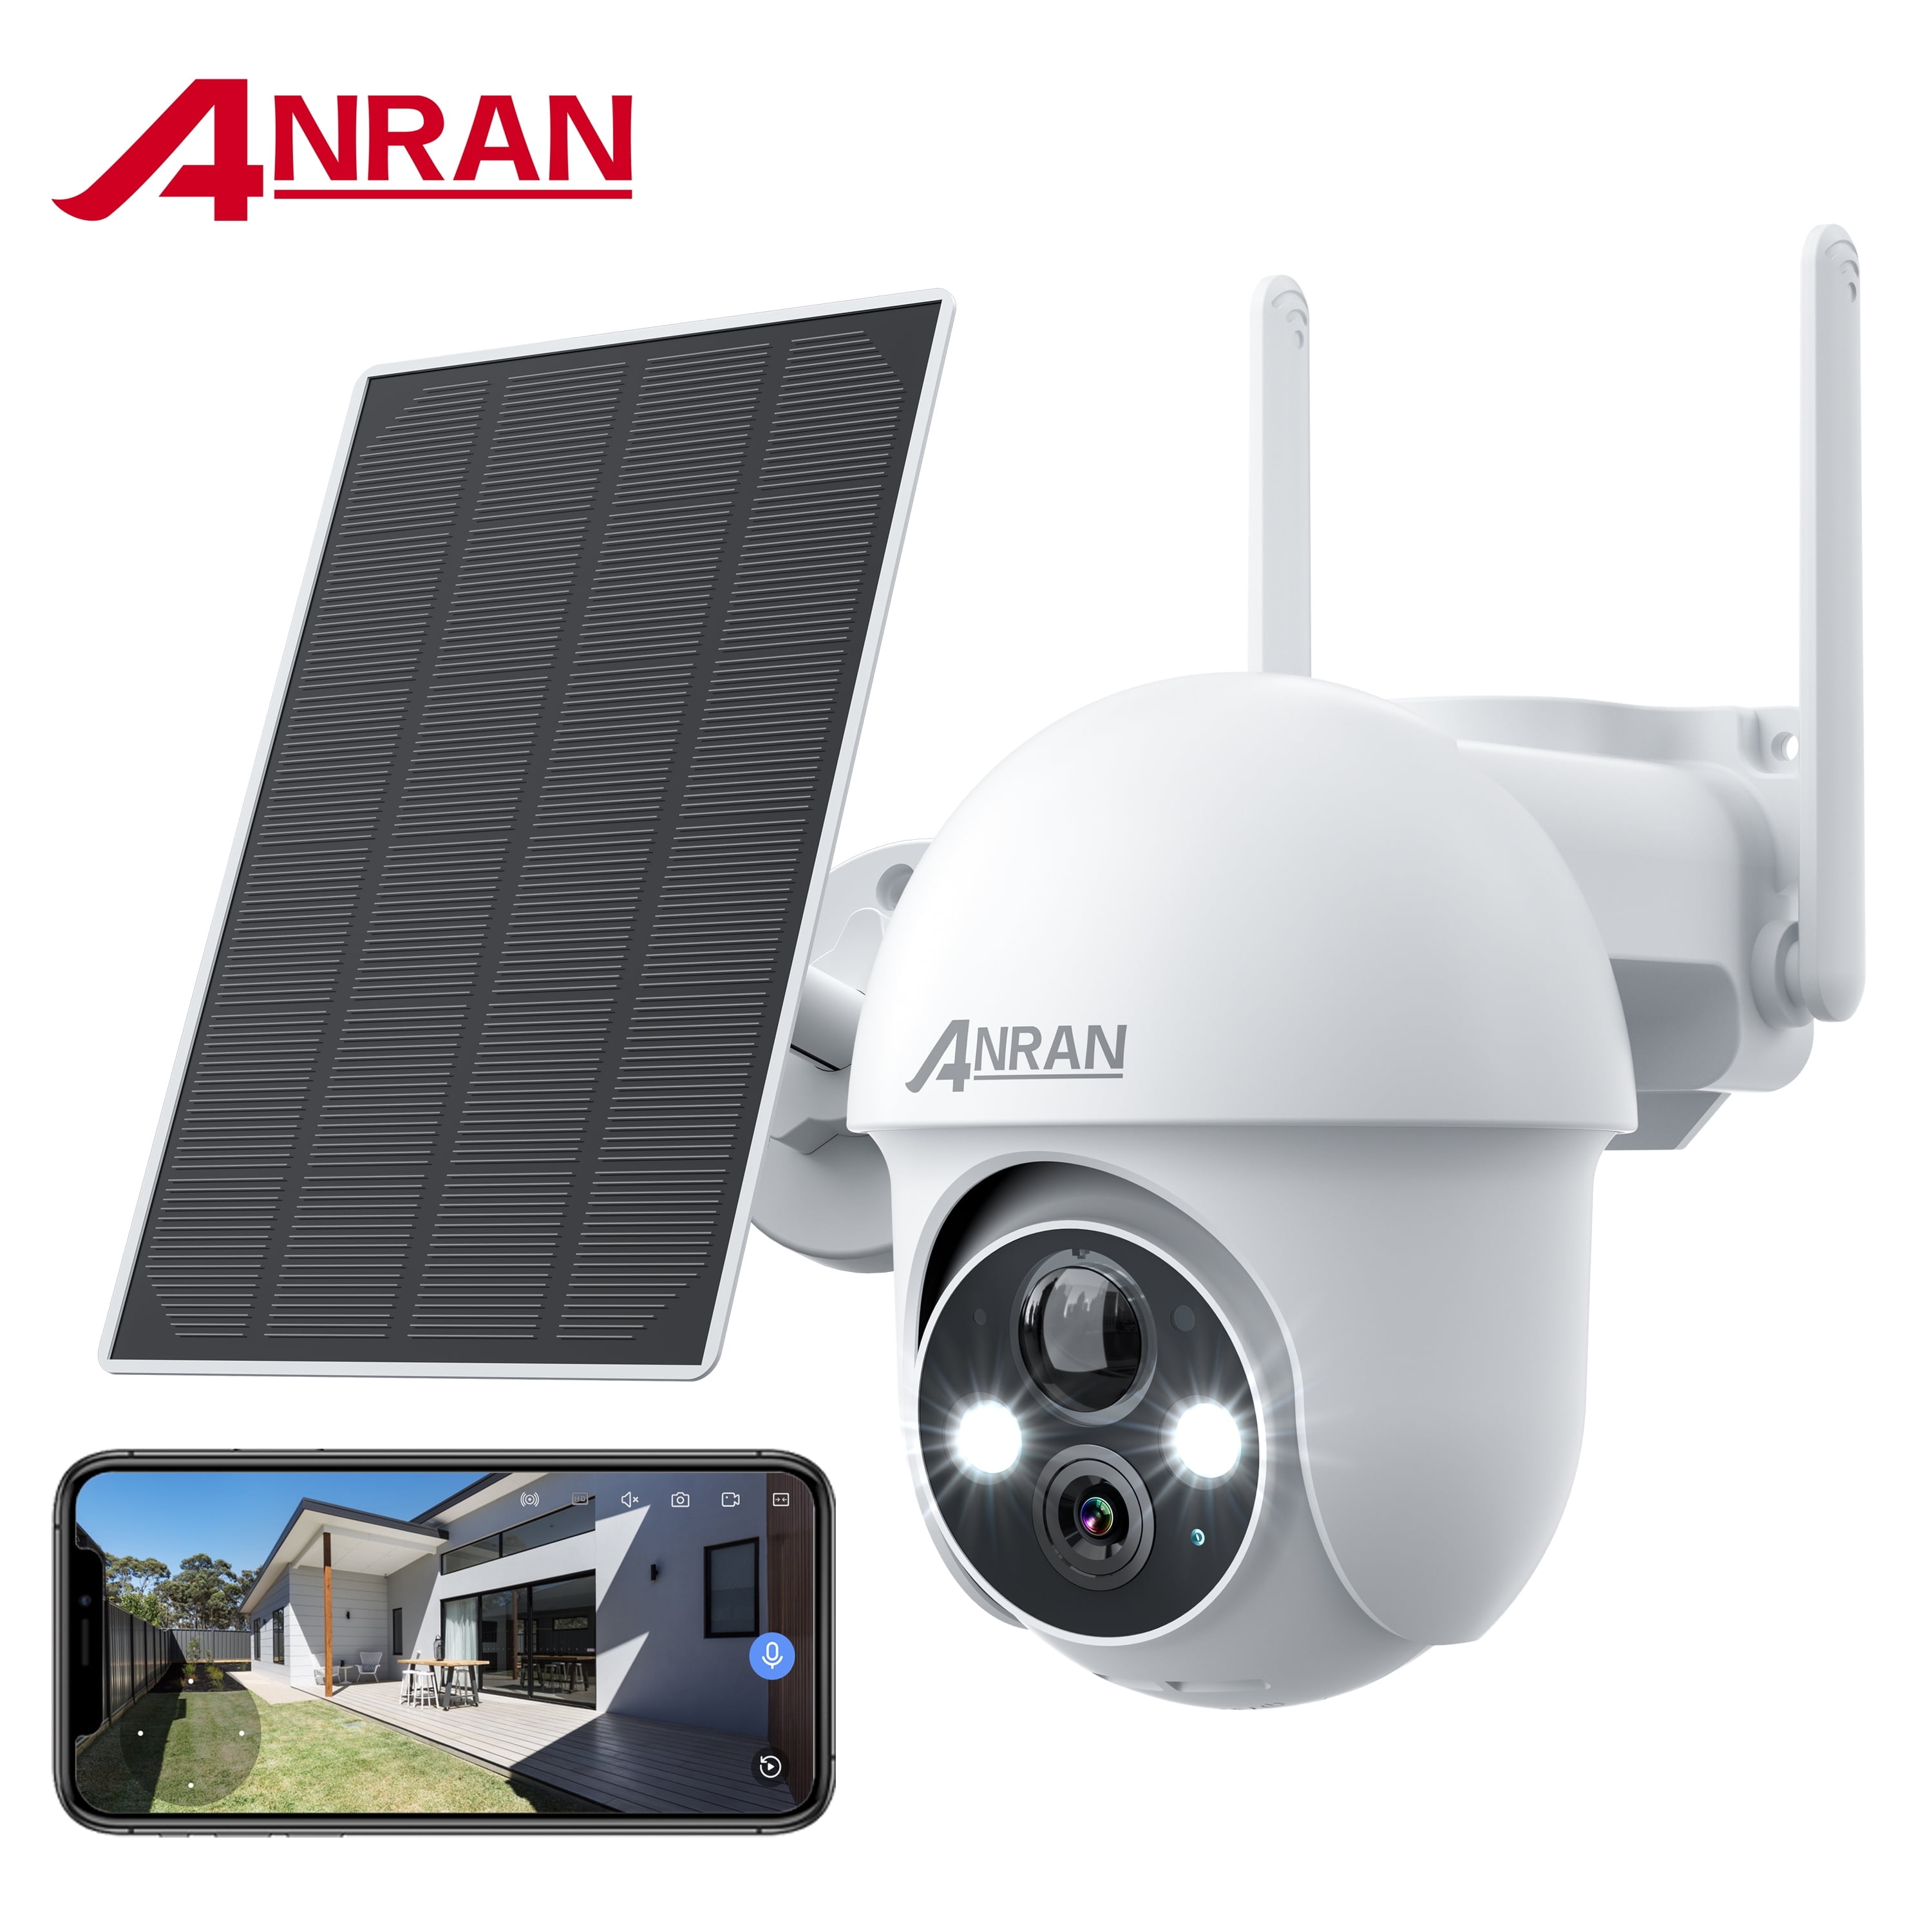 ANRAN 3G/4G LTE Cámara Vigilancia Exterior, Tarjeta SIM+32GB Tarjeta SD, 2K  360° PTZ Cámara IP Solar con Bateria, Visión Nocturna en Color, Audio  Bidireccional, Sirena, Detección de Humana, IP66